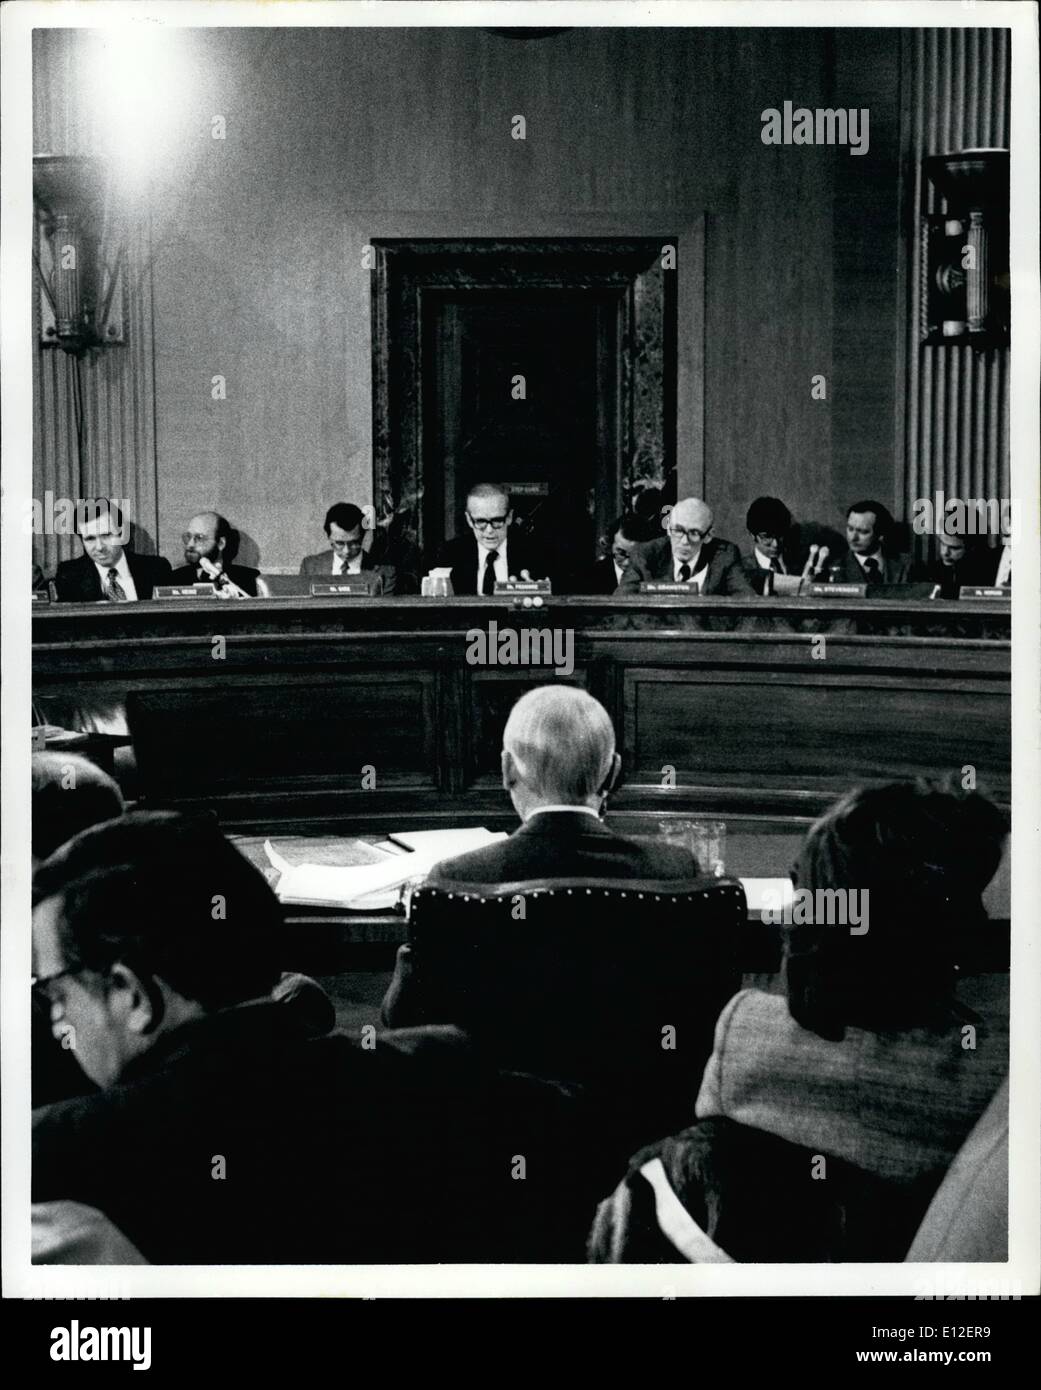 21 dicembre 2011 - febbraio 1980, G Capitol Hill, nello Stato di Washington D.C.. G. William Miller testimonianza prima un sottocomitato del senato sul settore bancario. Foto Stock